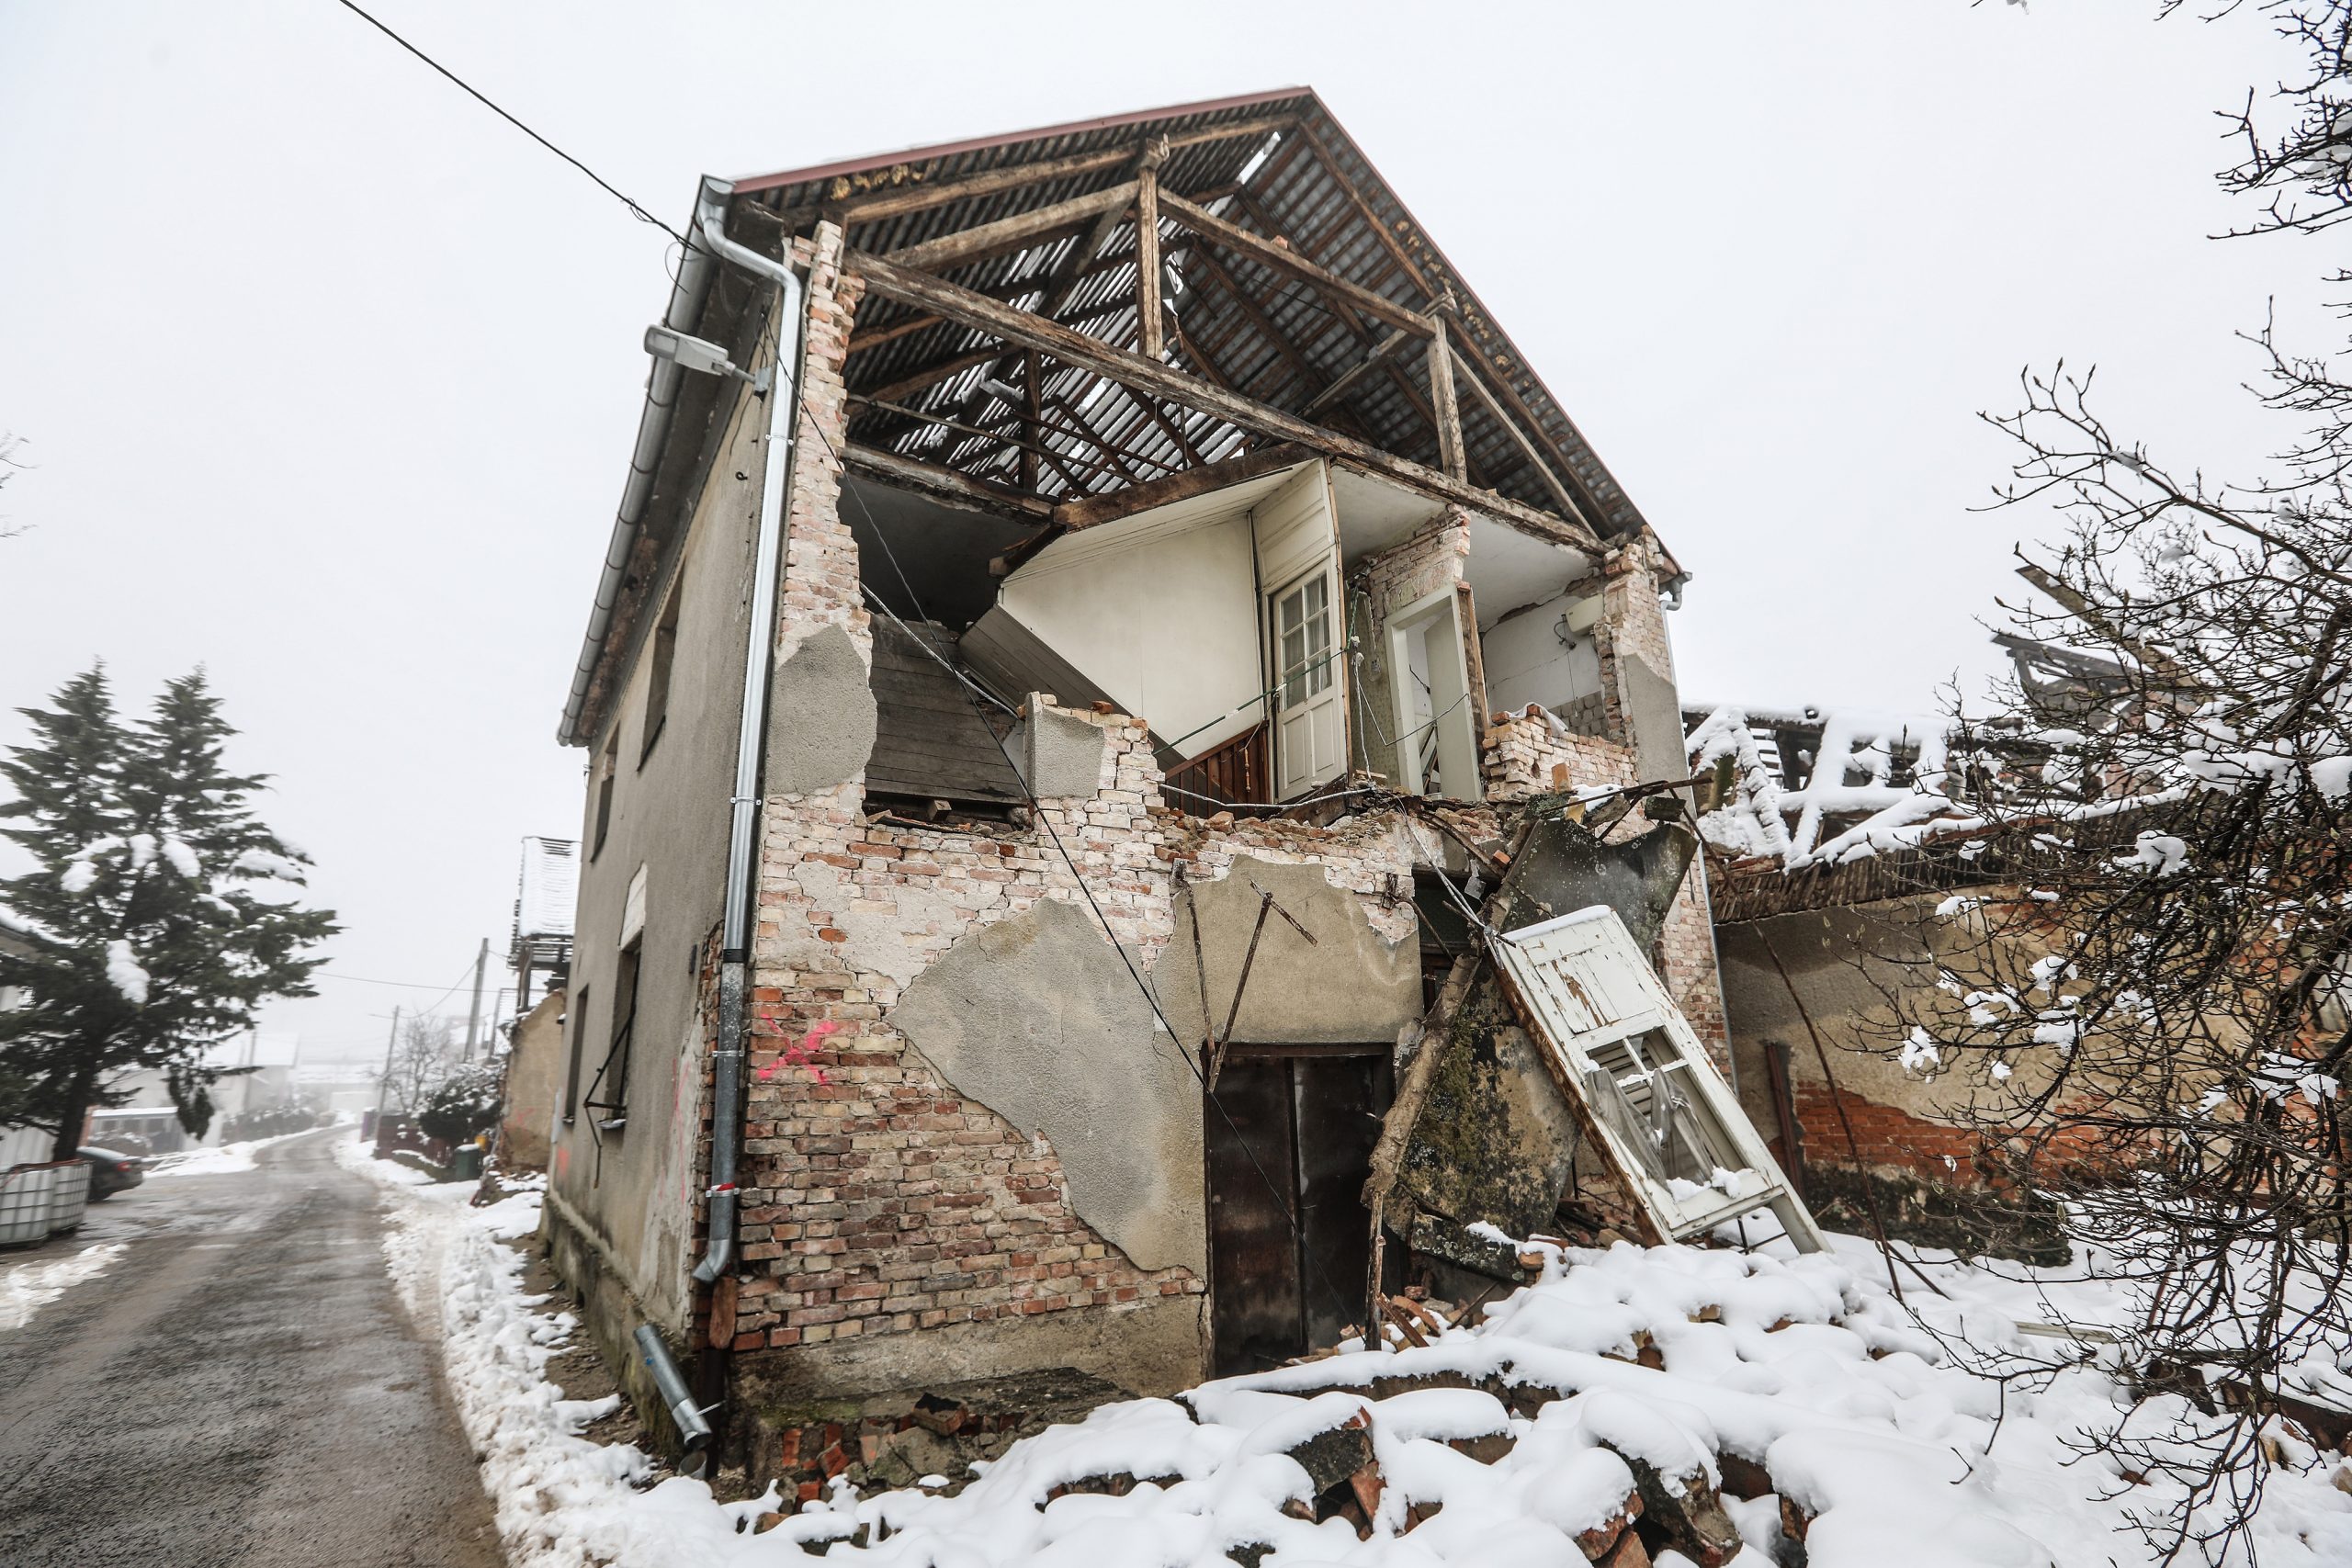 02.02.2021., Petrinja - Svakodnevnica u gradu Petrinji koji je razrusen nakon velikog potresa.
Photo: Robert Anic/PIXSELL